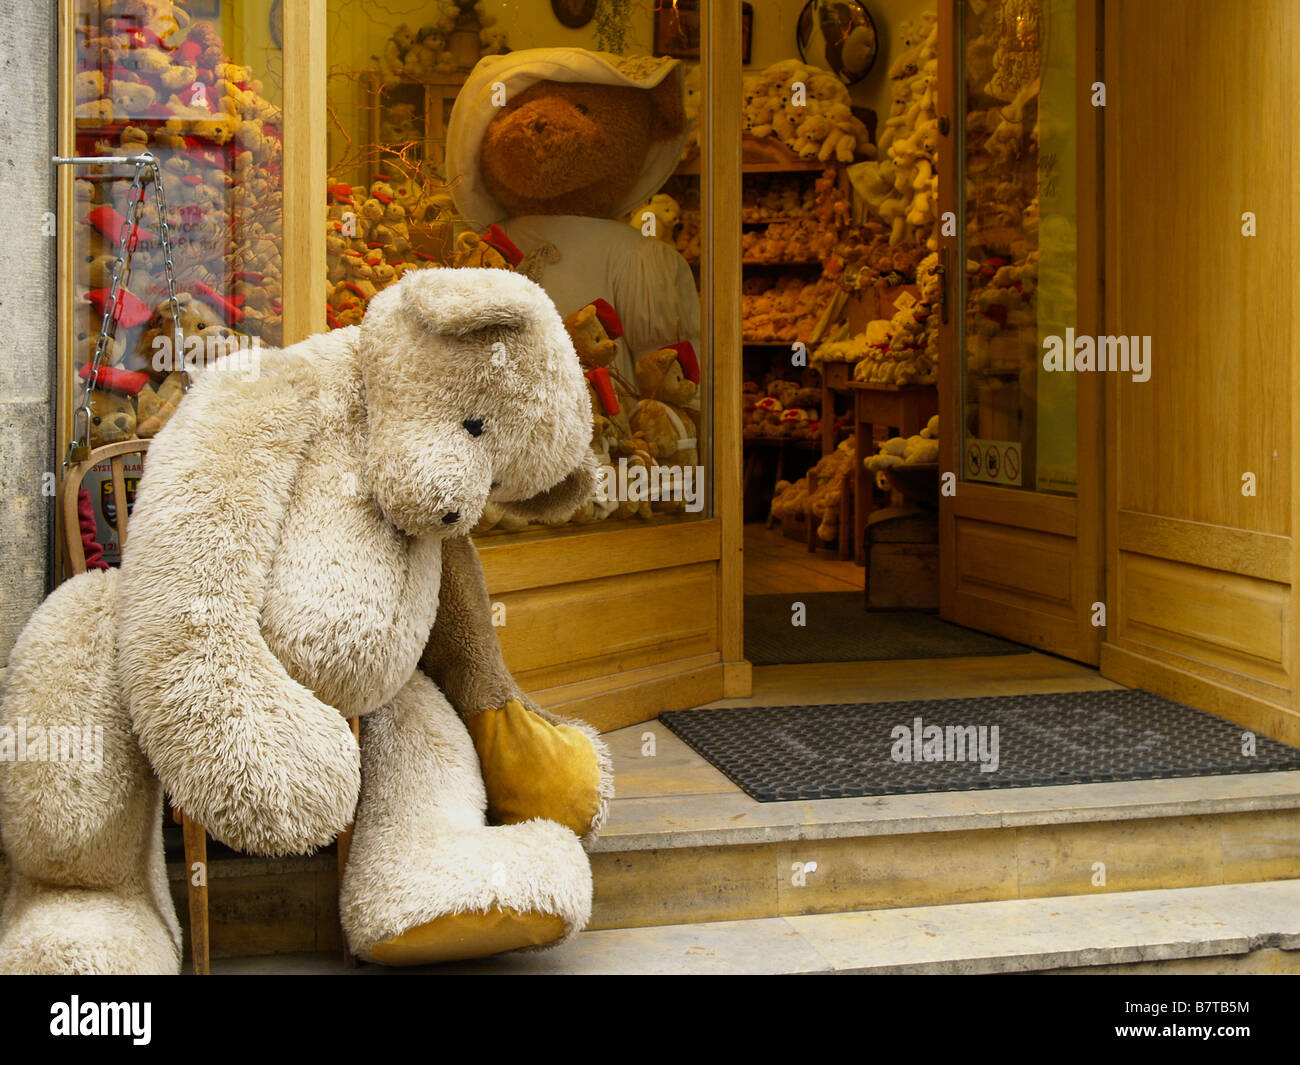 giant teddy bear shop